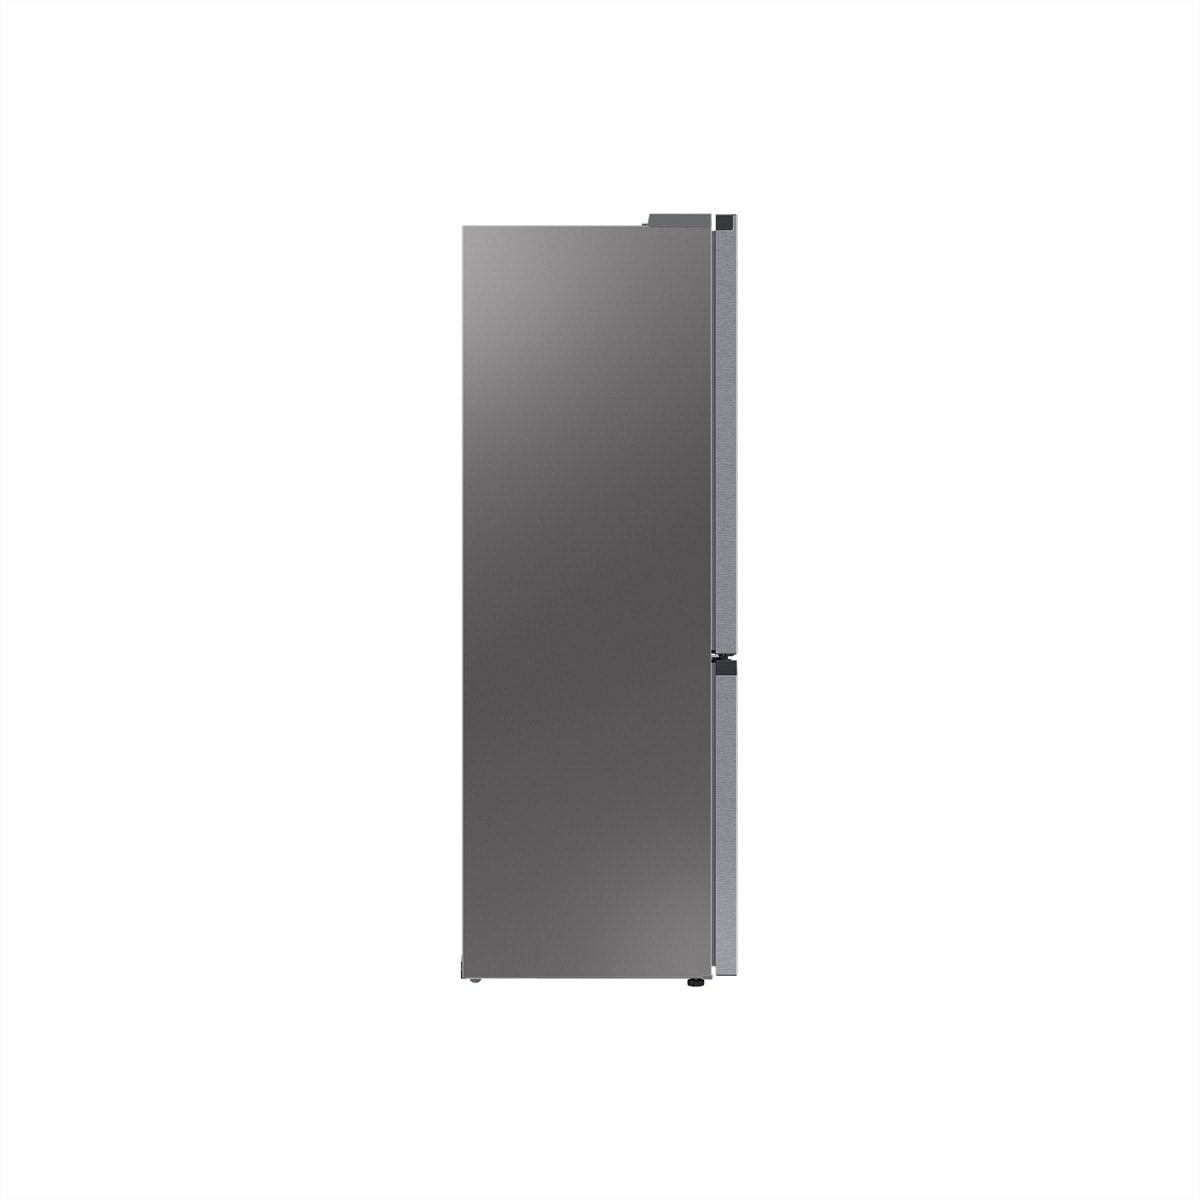 Samsung Kühl-/Gefrierkombination »Samsung Kühl-Gefrierkombination RB7300, 341l, D, WiFi, Silber mit Griffmulde«, 185.3 cm hoch, 59.5 cm breit